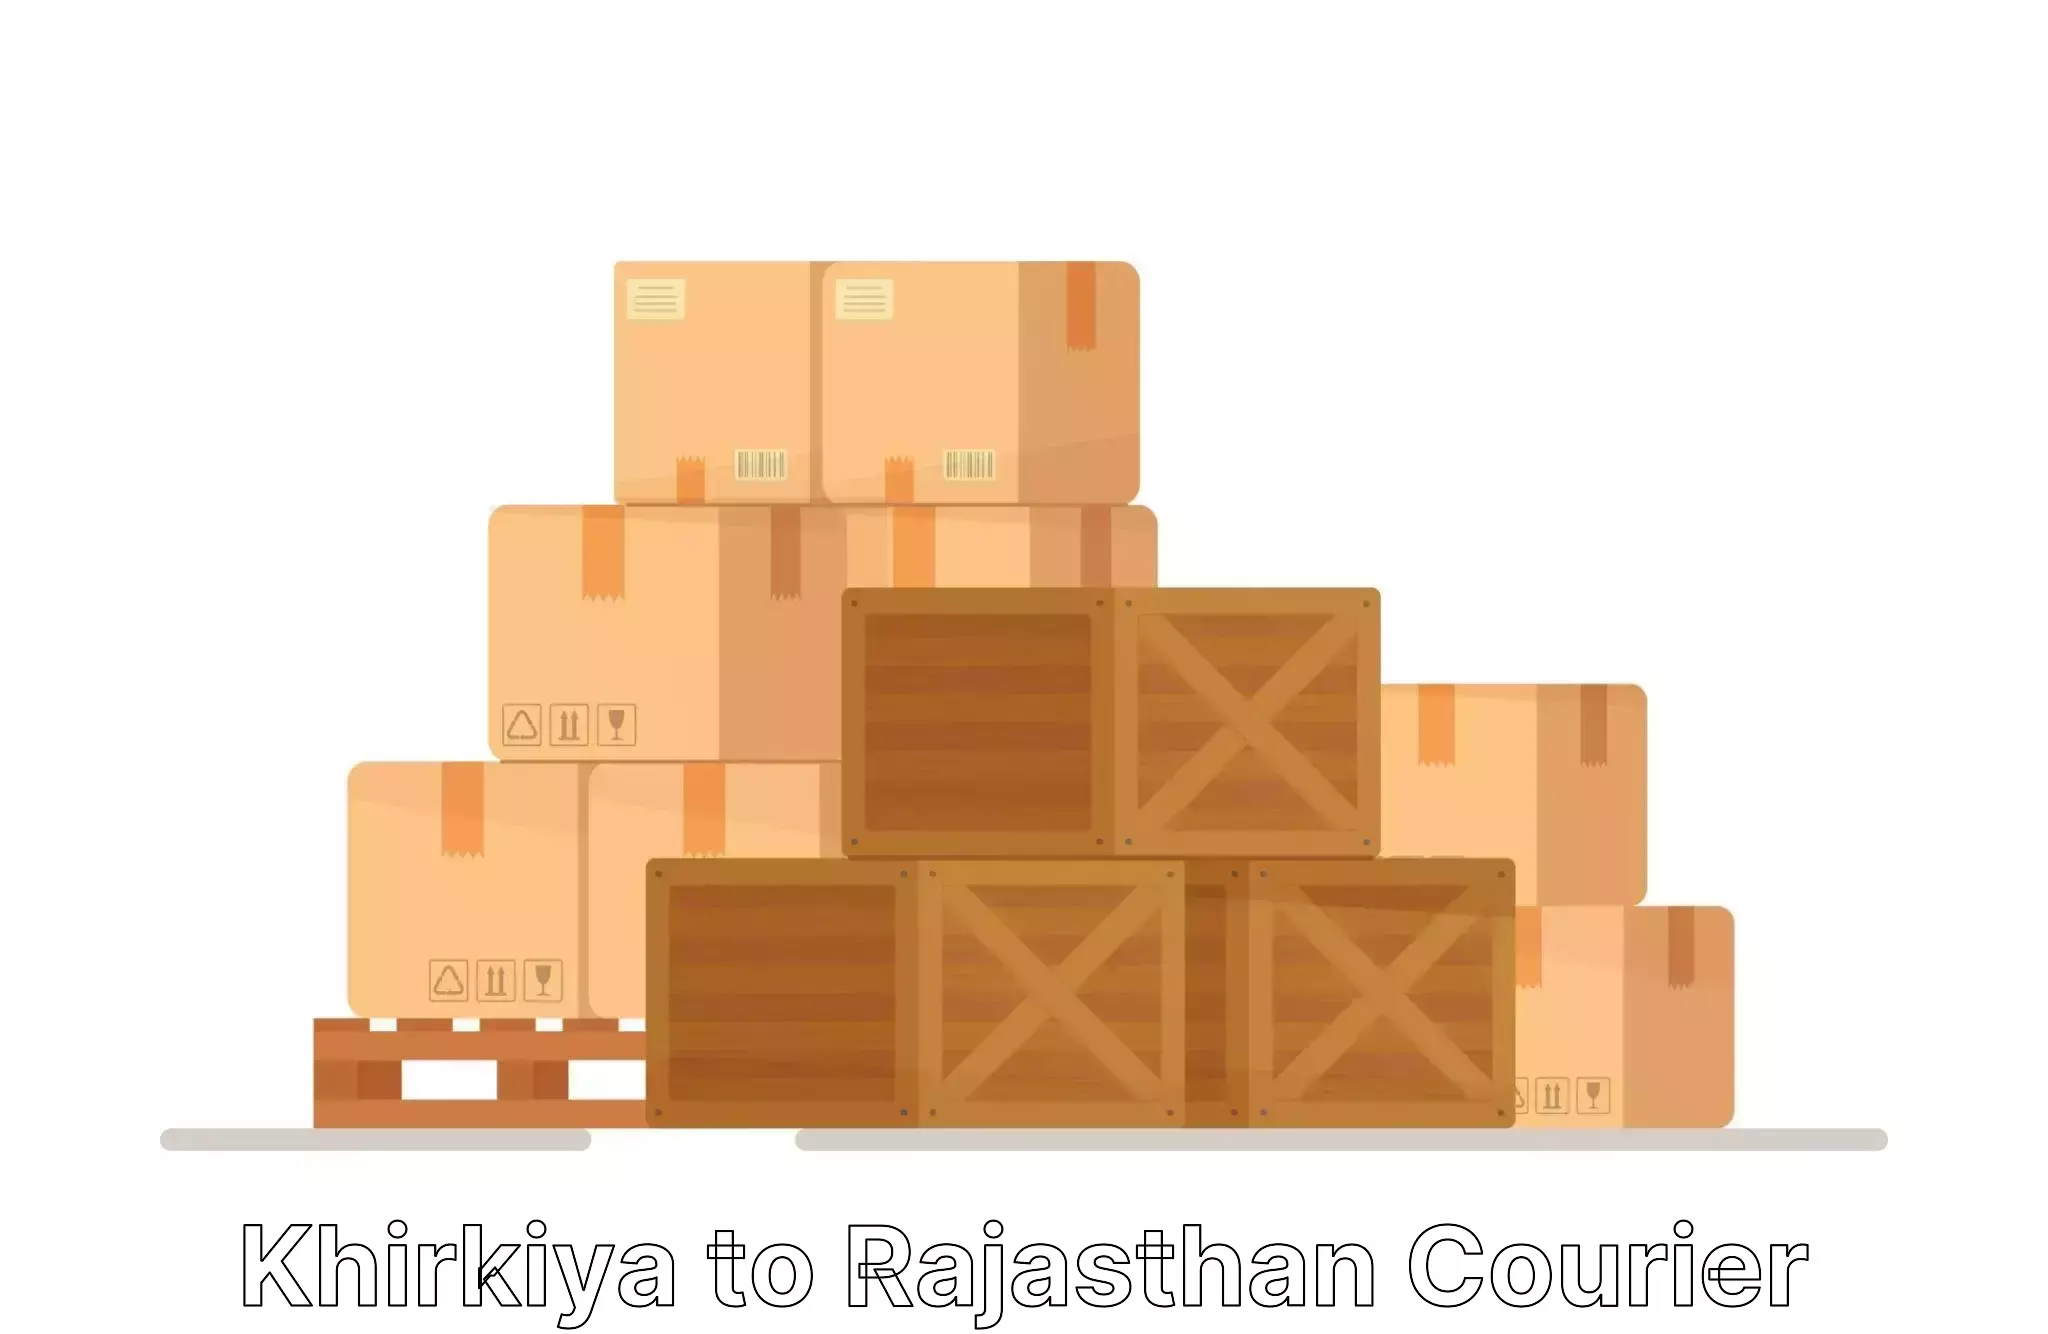 Furniture moving solutions Khirkiya to Dudu